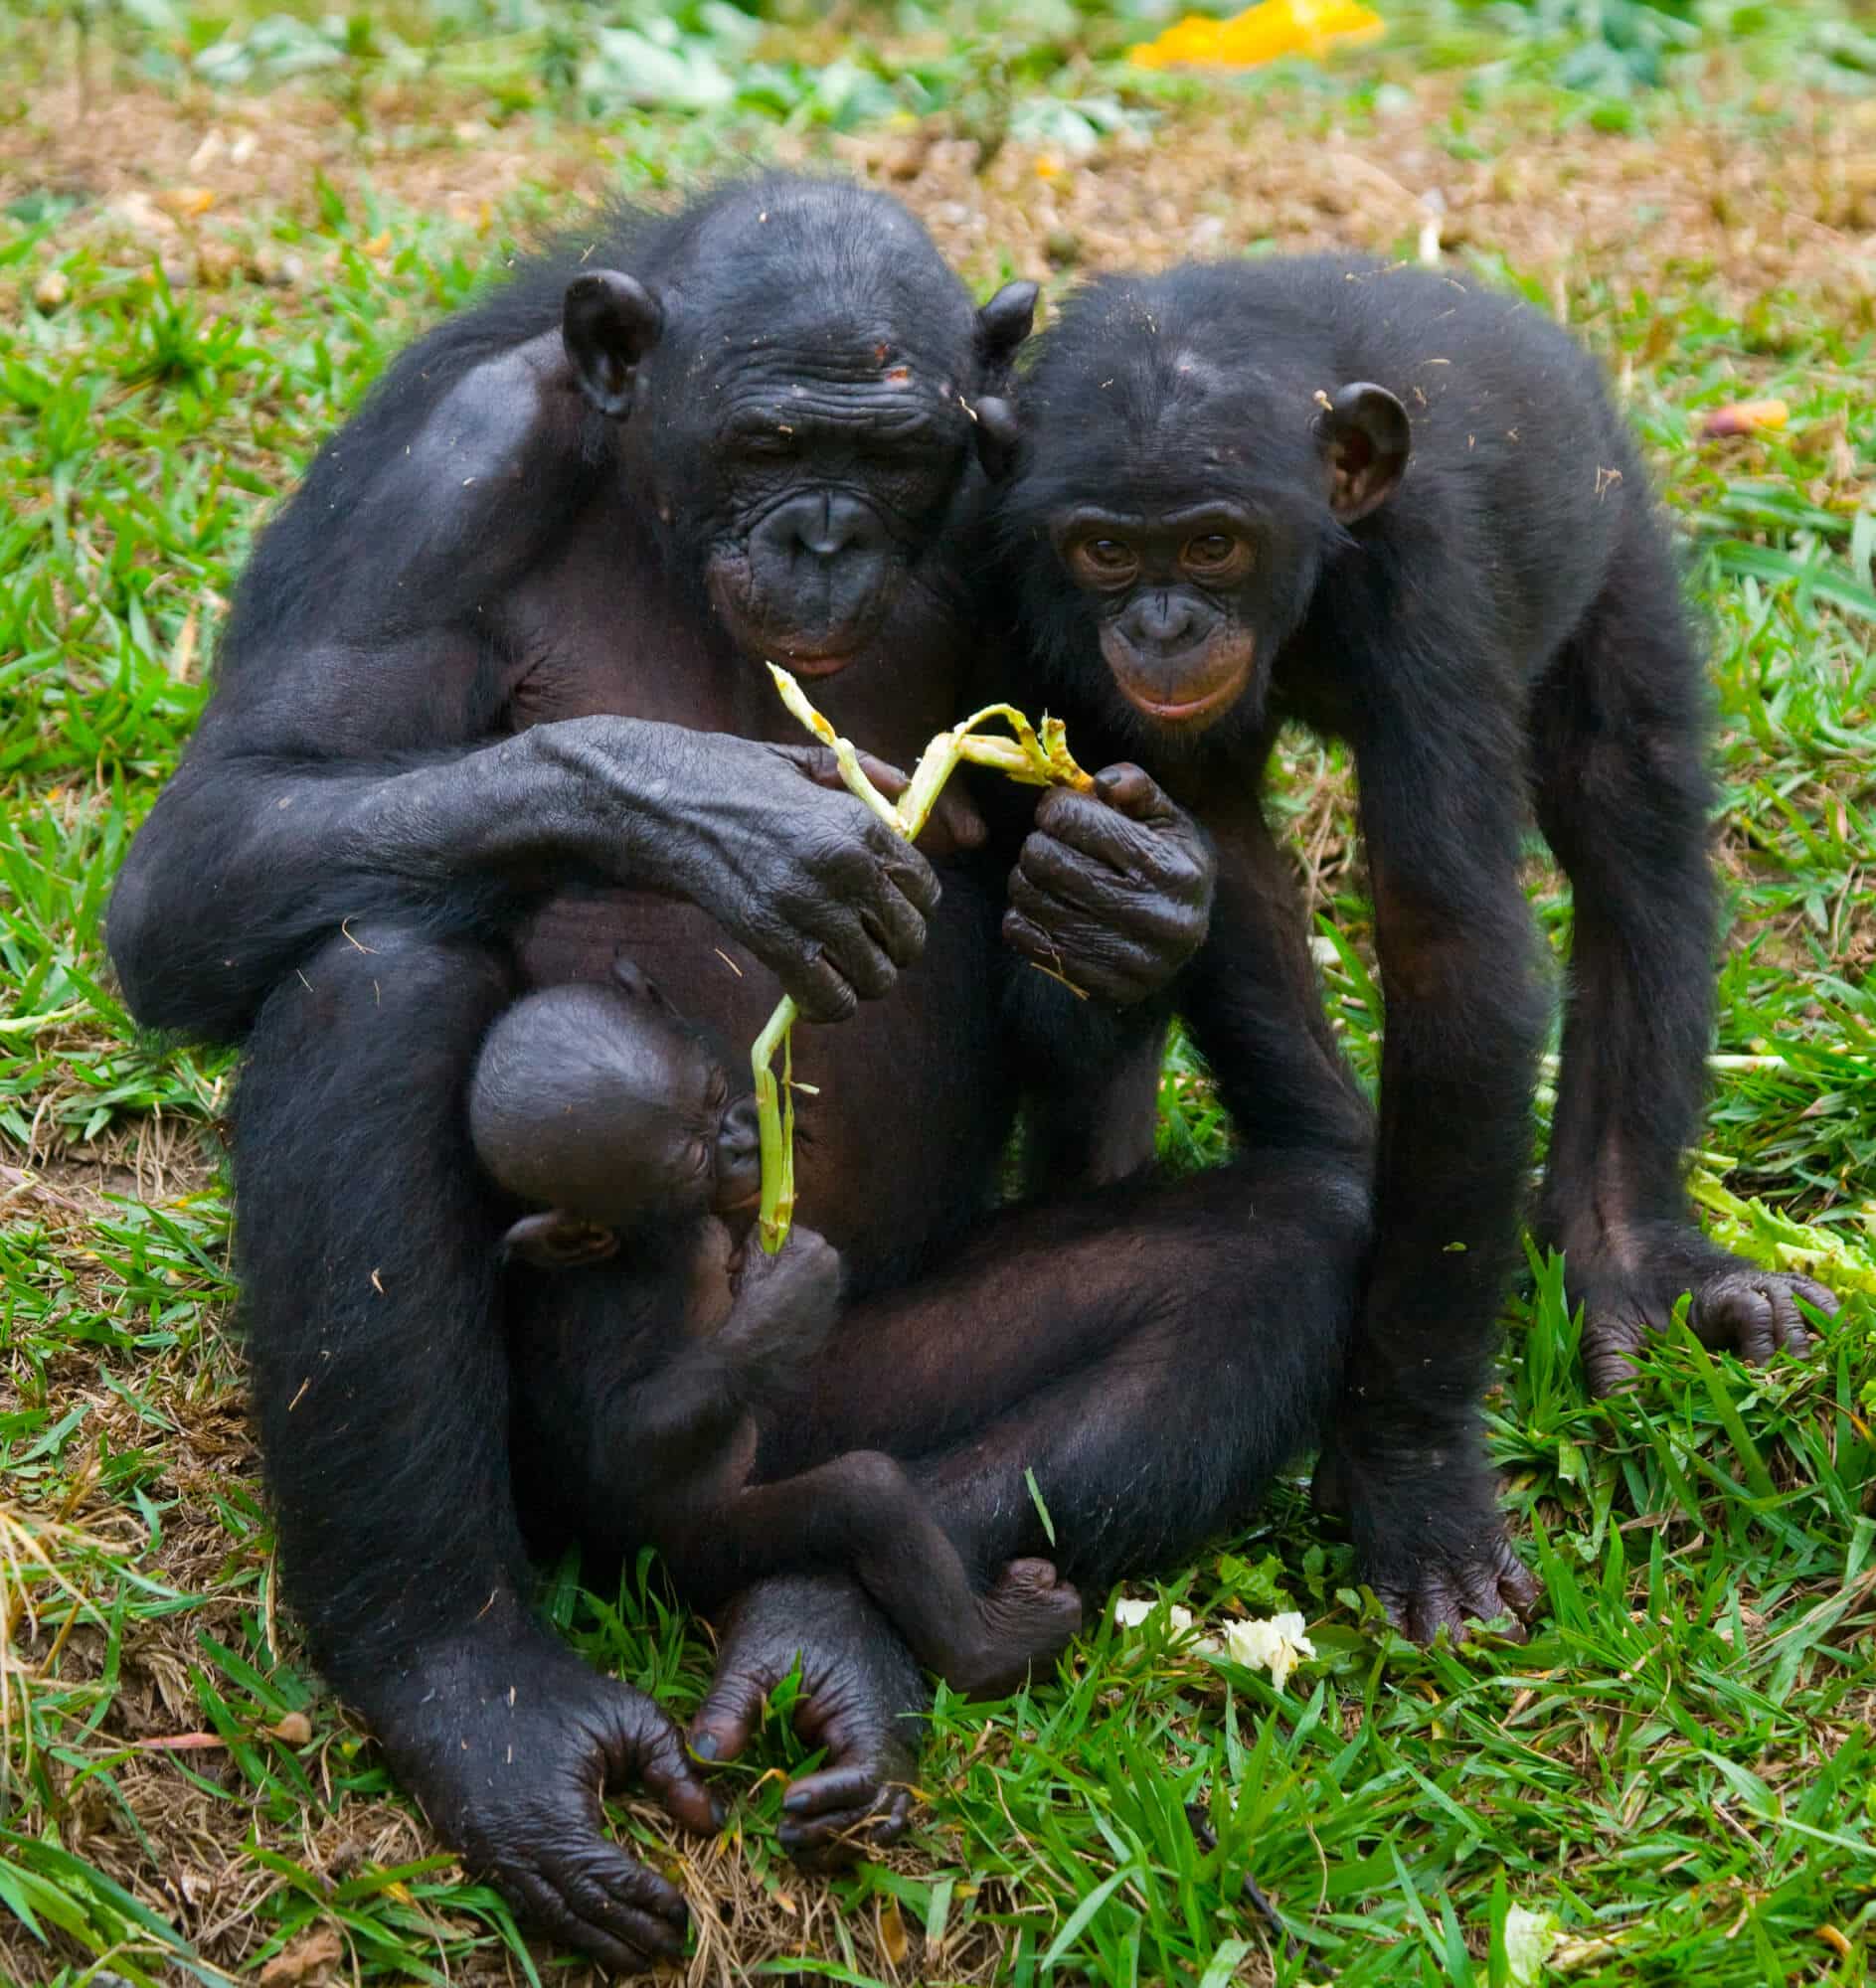 שני שימפנזי בונובו ותינוק בונובו. <a href="https://depositphotos.com. ">איור: depositphotos.com</a>